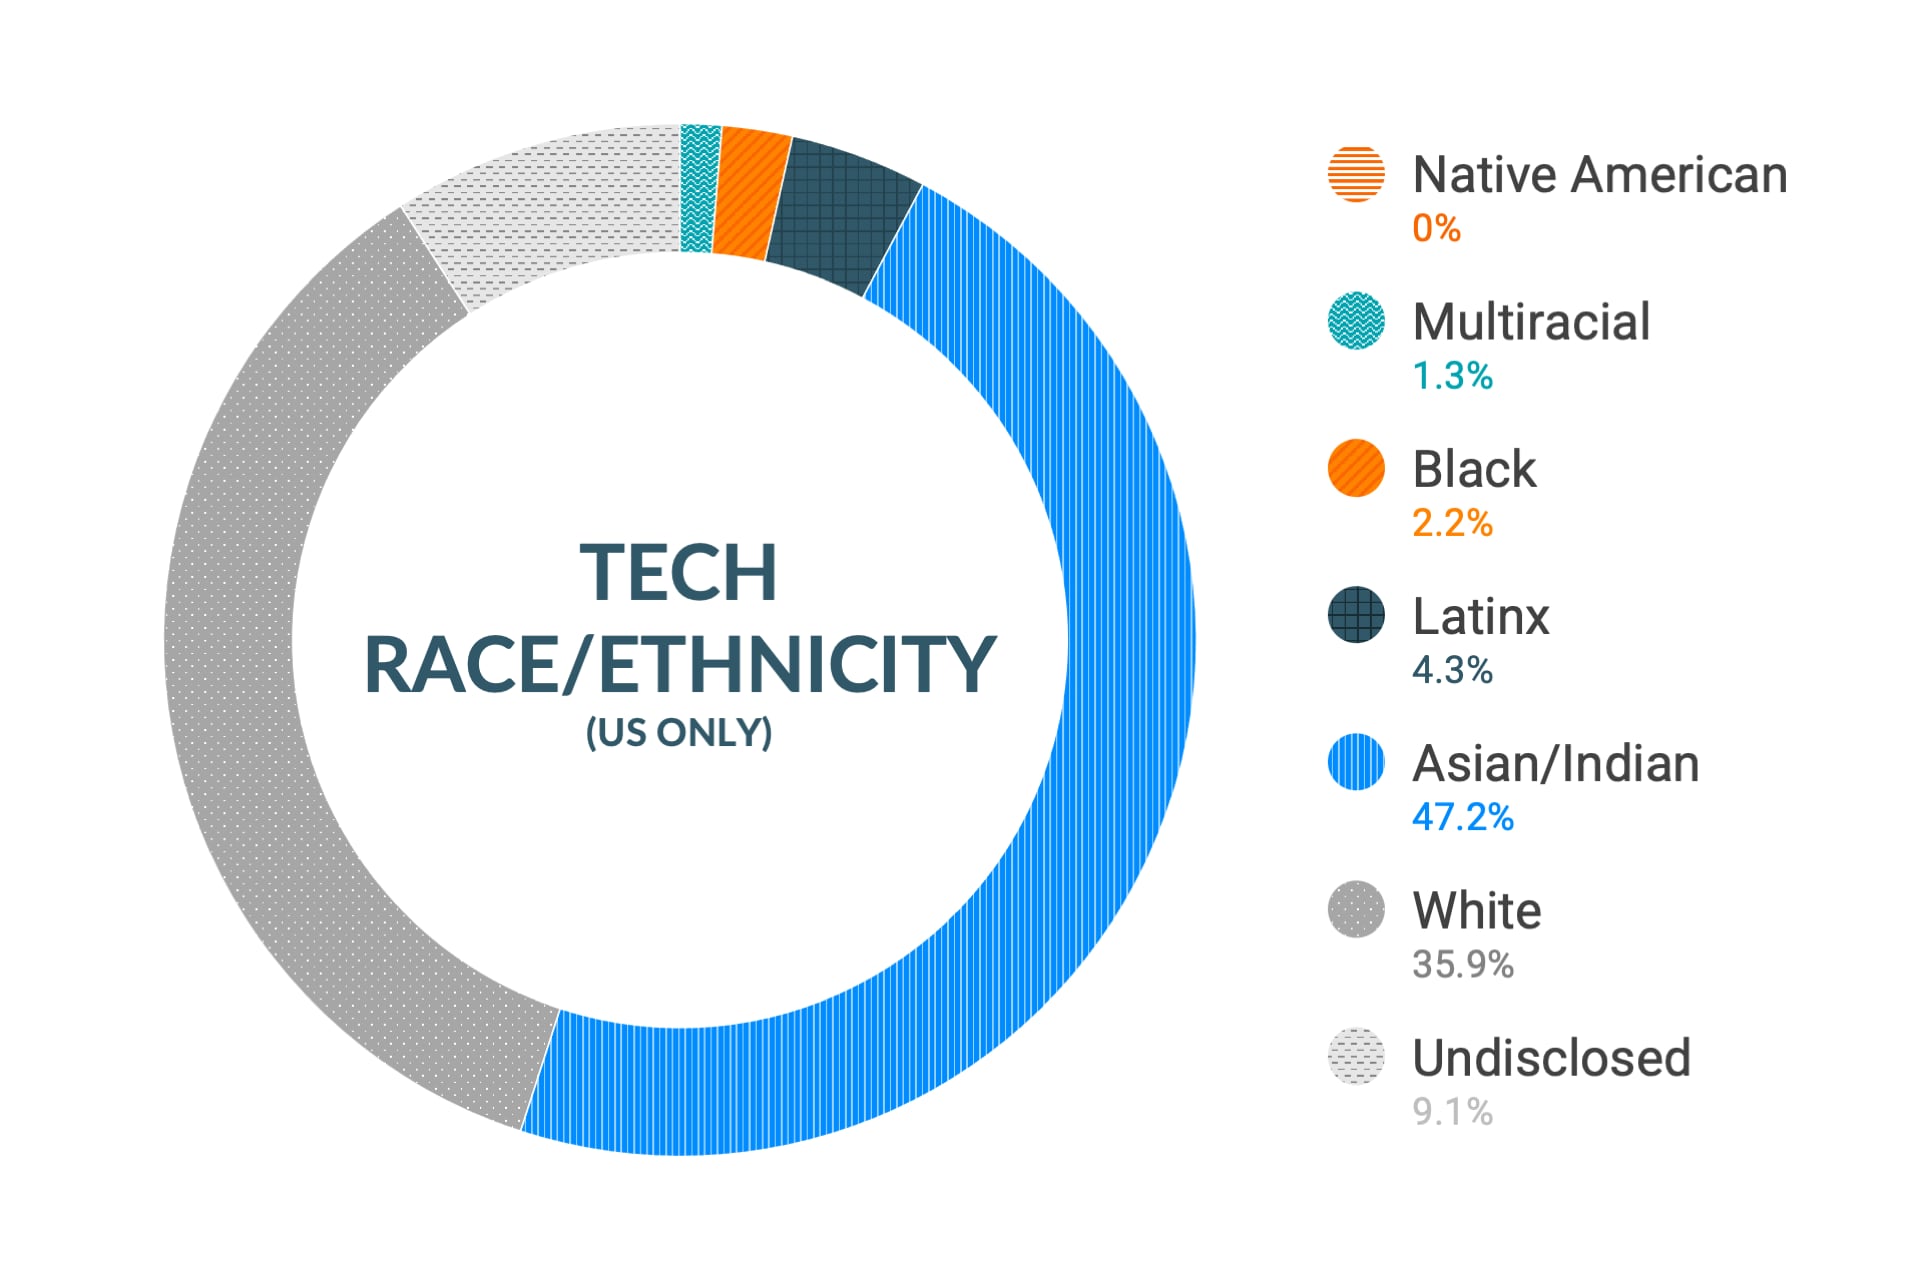 Dane firmy Cloudera dotyczące różnorodności i integracji w zakresie rasy i pochodzenia etnicznego według stanowisk technicznych i inżynieryjnych w Stanach Zjednoczonych: rdzenni Amerykanie 0%, osoby wielorasowe 1,6%, osoby czarnoskóre 2,3%, latynosi 2,9%, Azjaci i Hindusi 46,7%, biali 37,6%, nieujawnione 8,9%